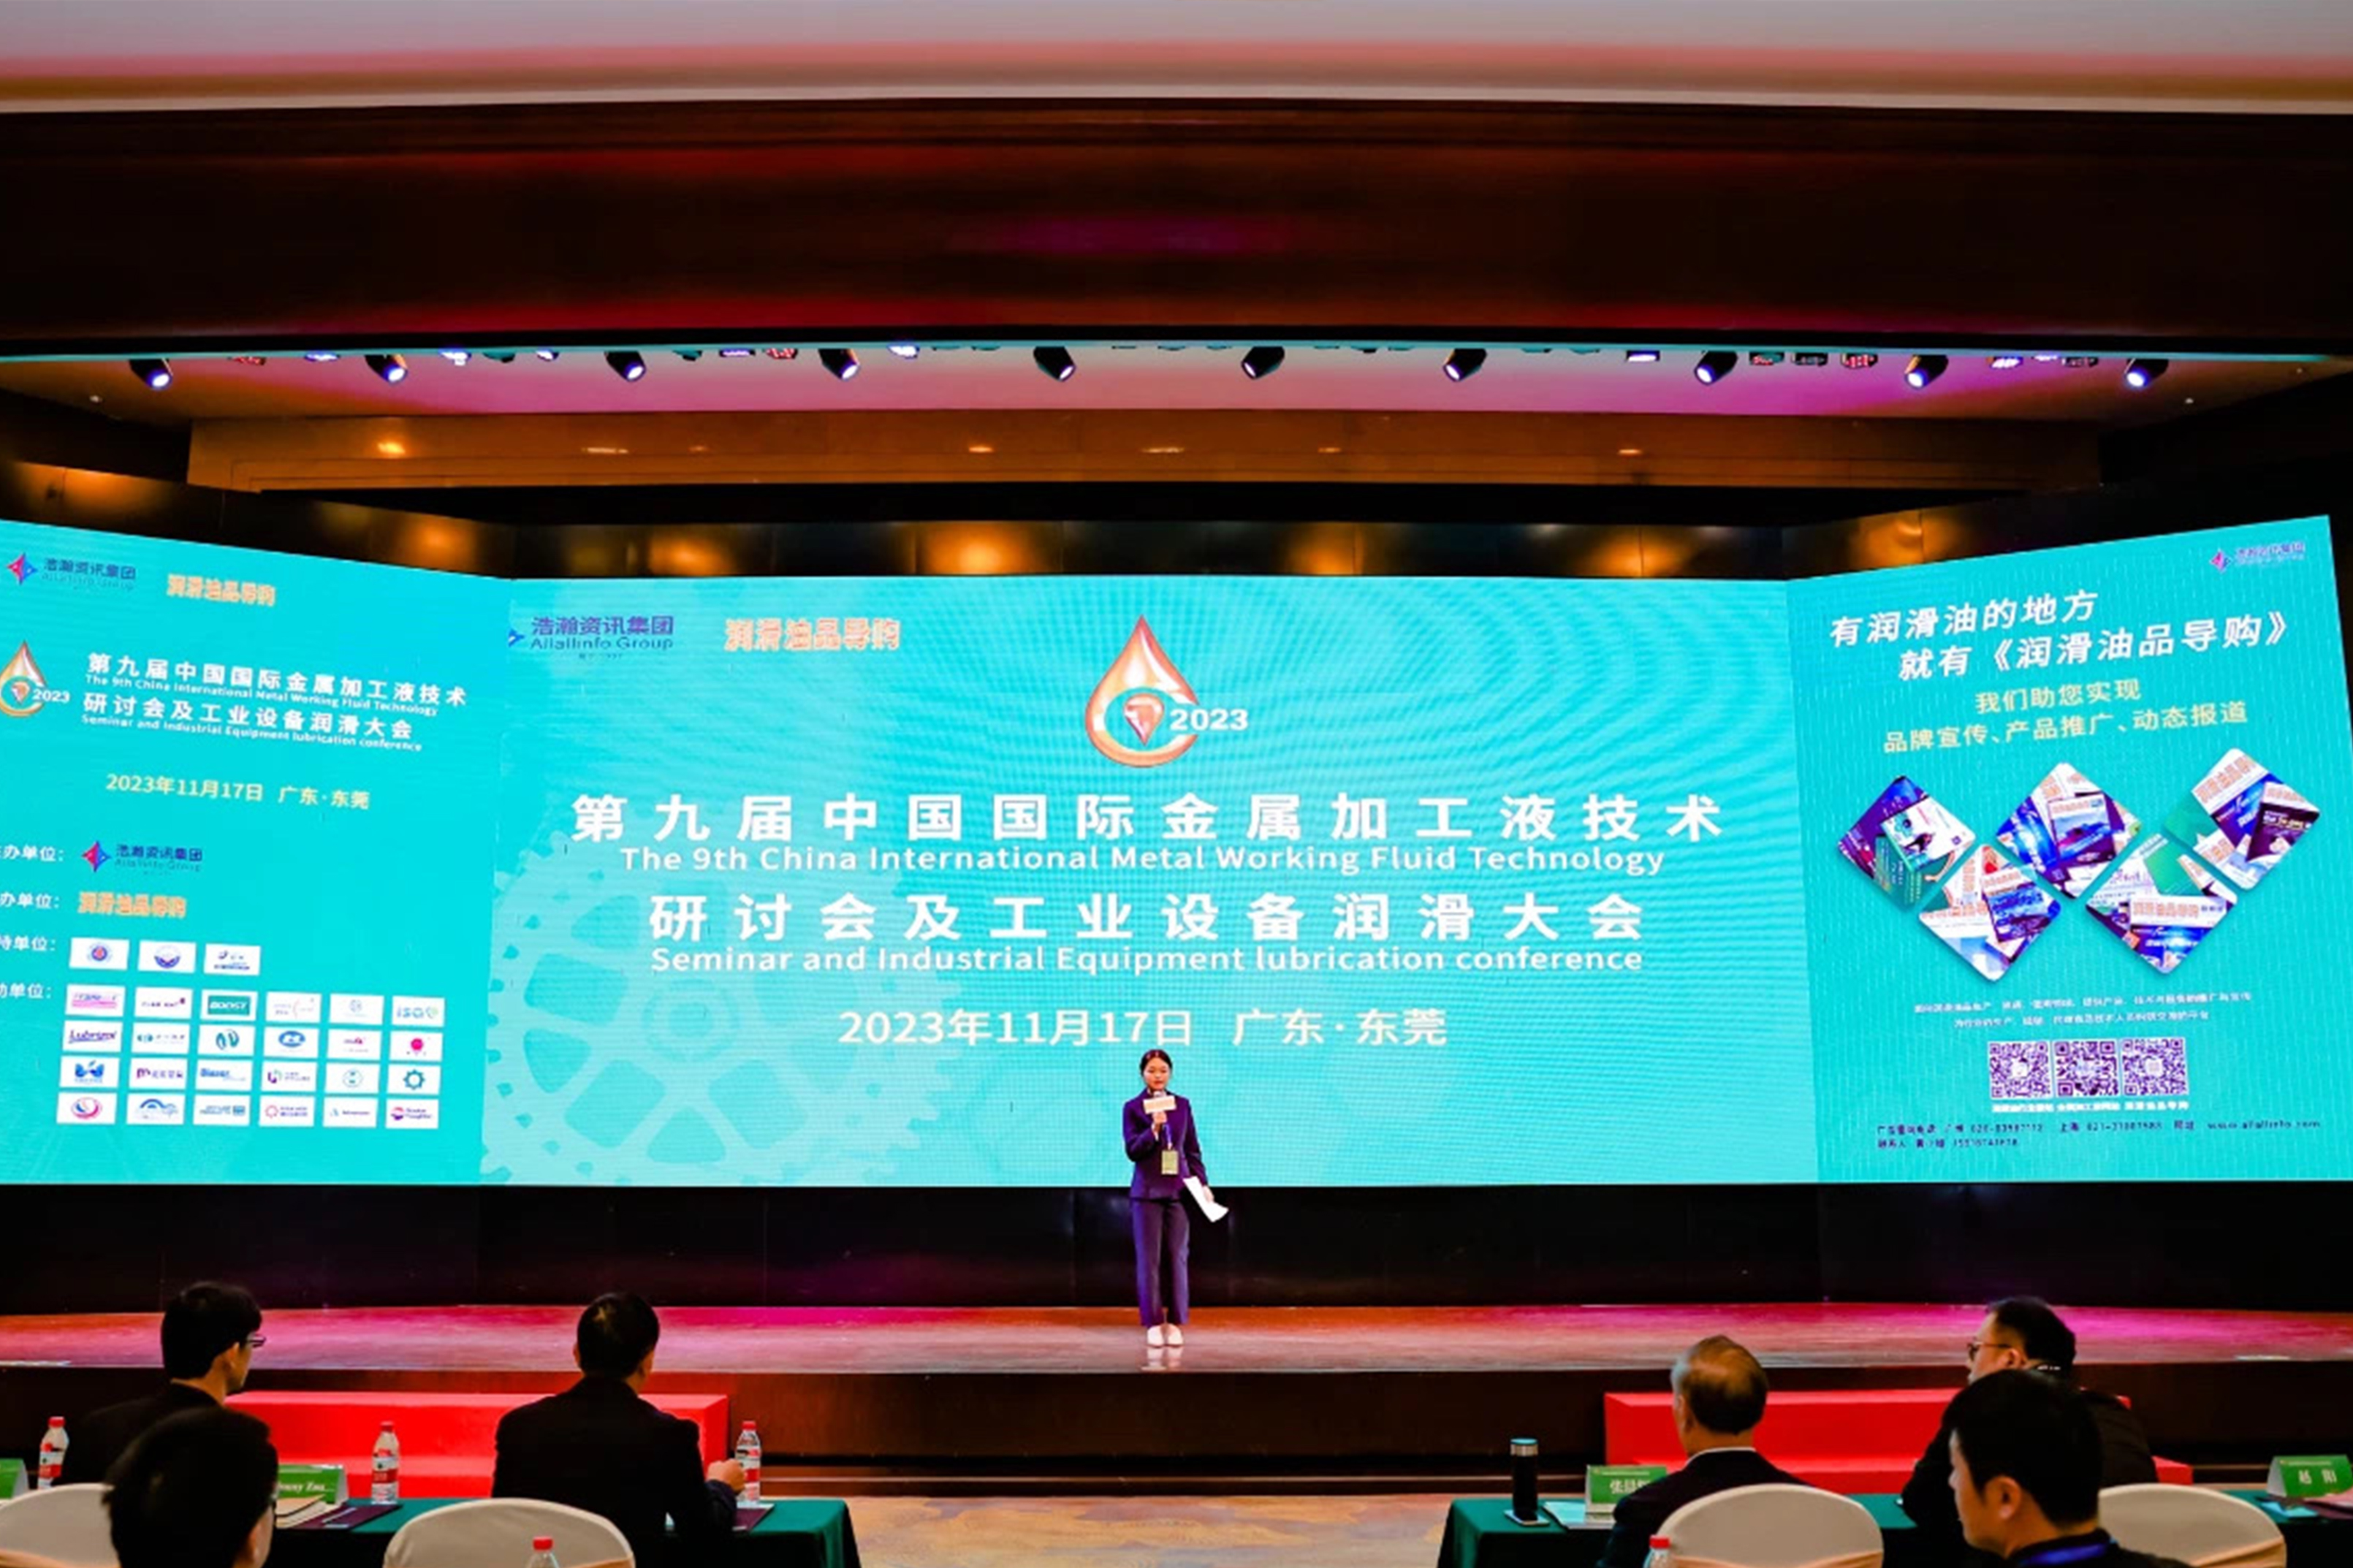 第九届中国国际金属加工液技术研讨会术